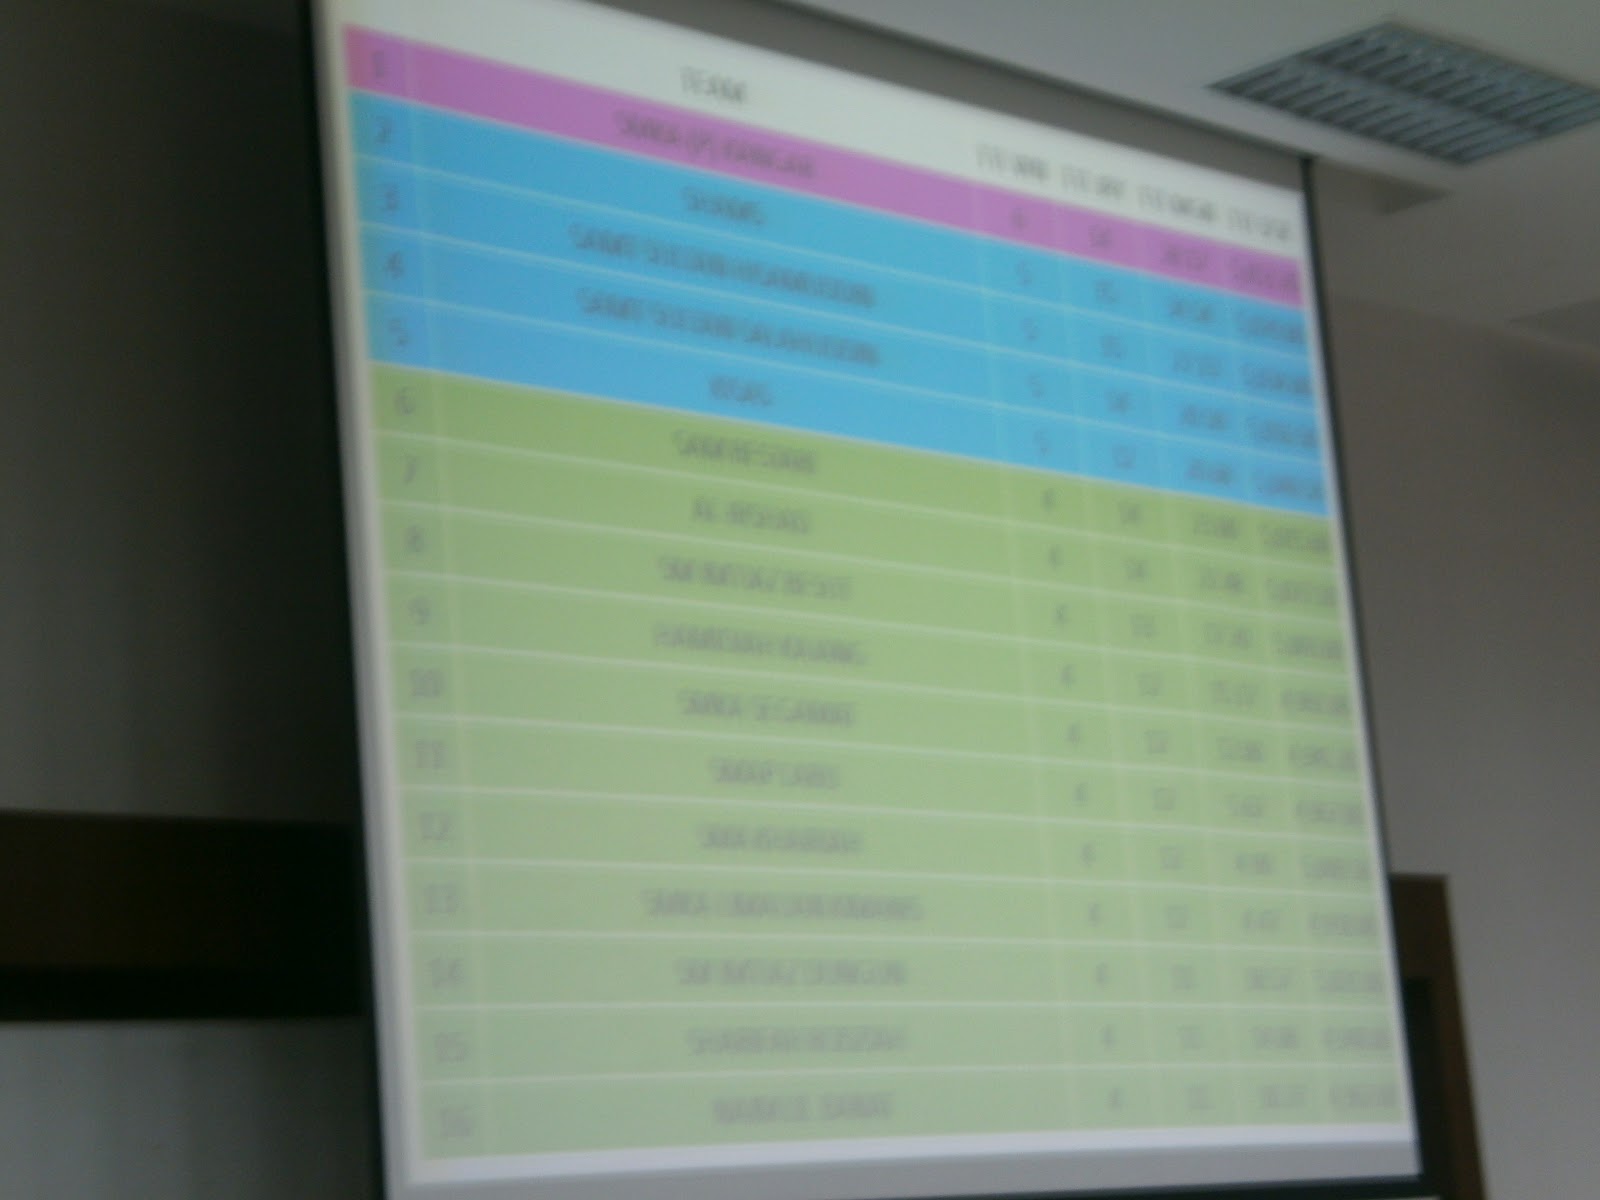 antara top 16 sekurang kurang ada gak wakil dari Kelantan bangga jadi anak kelantan